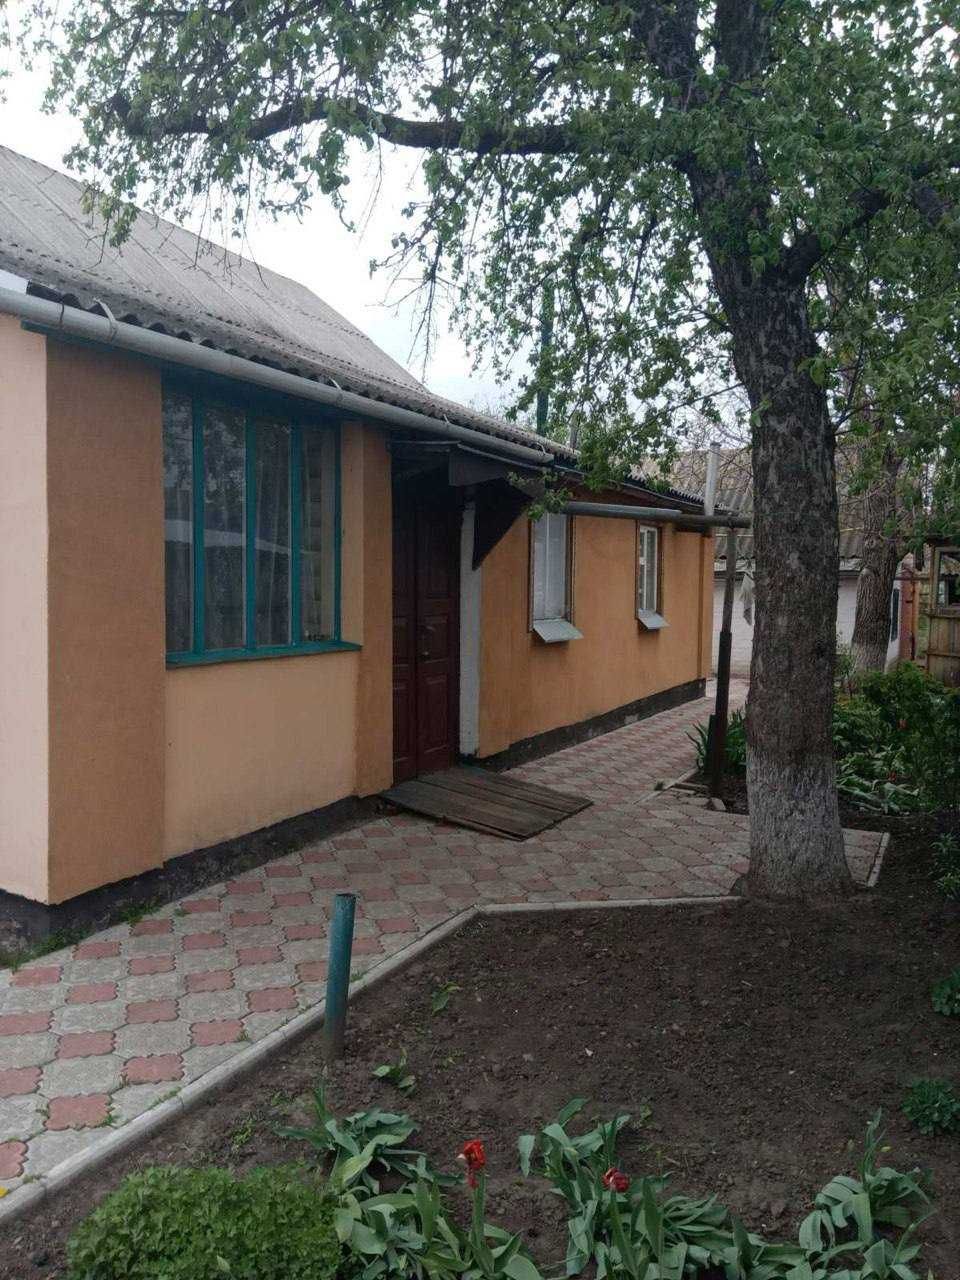 Продам будинок у Кошманівці, Полтавської області